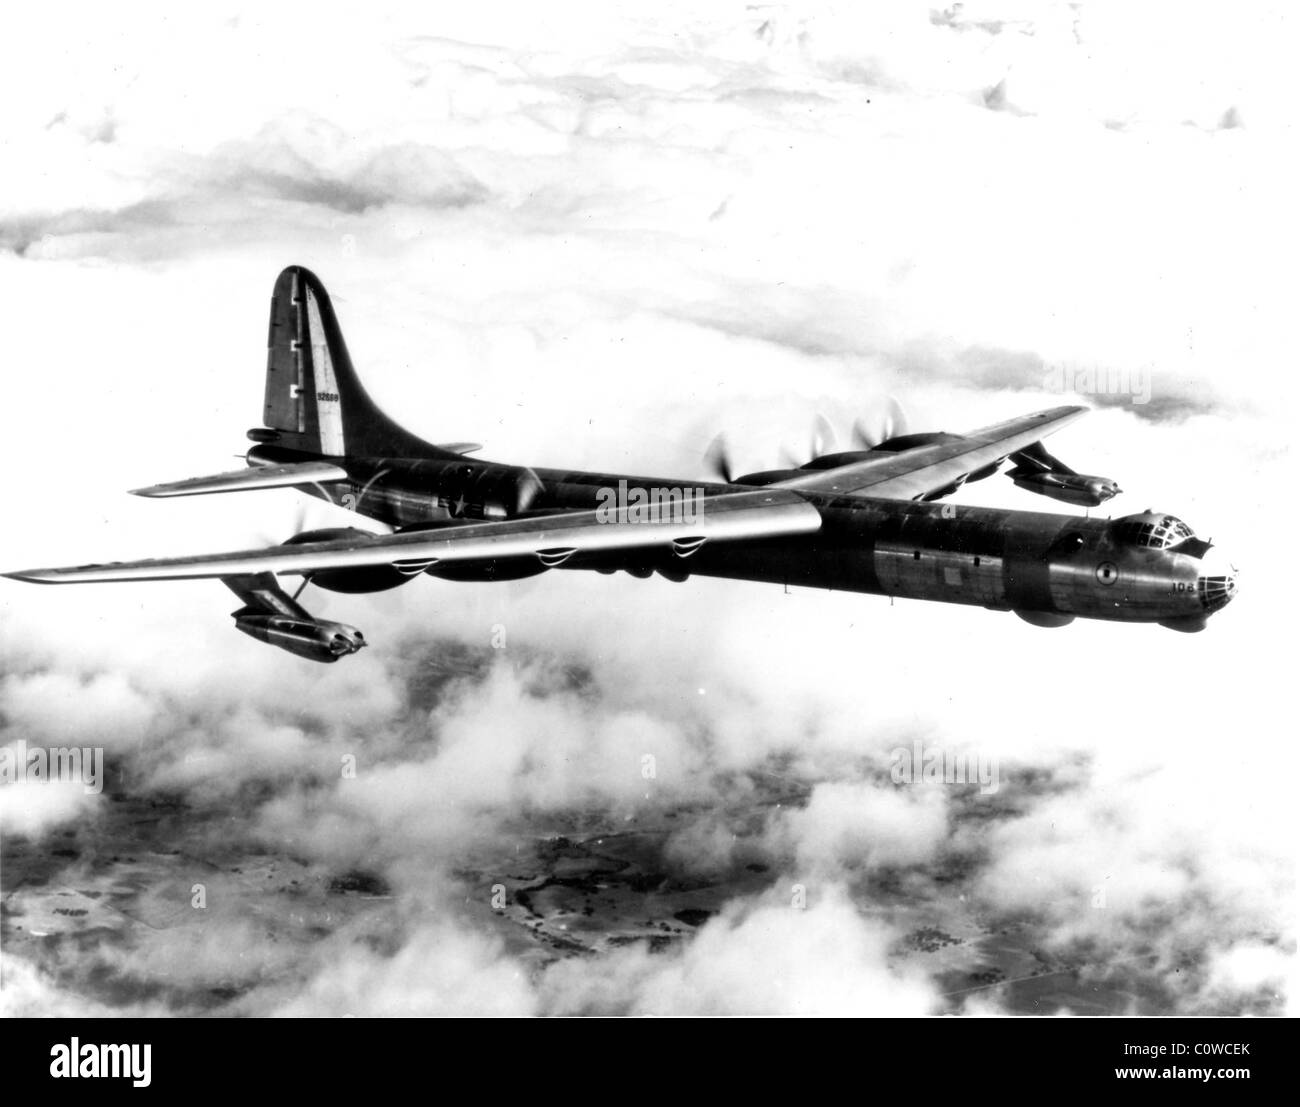 Convair RB-36-D, die Jet-augmented Version des interkontinentalen strategischen Bomber der US Air Force. Stockfoto